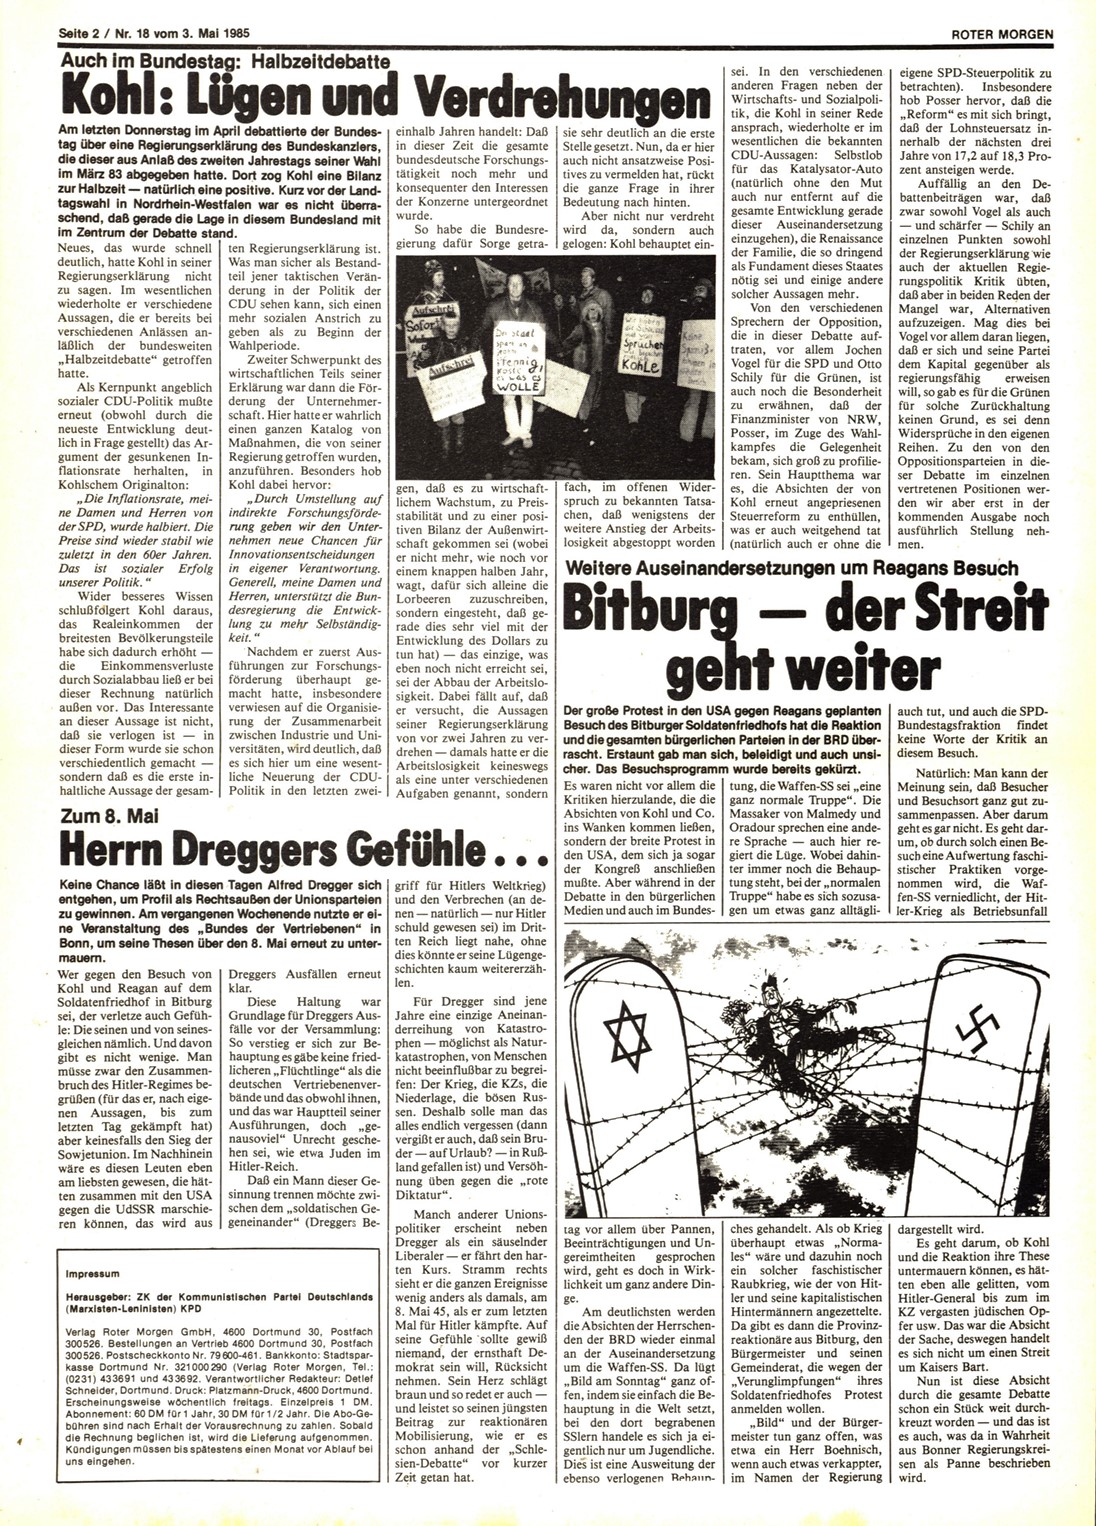 Roter Morgen, 19. Jg., 3. Mai 1985, Nr. 18, Seite 2